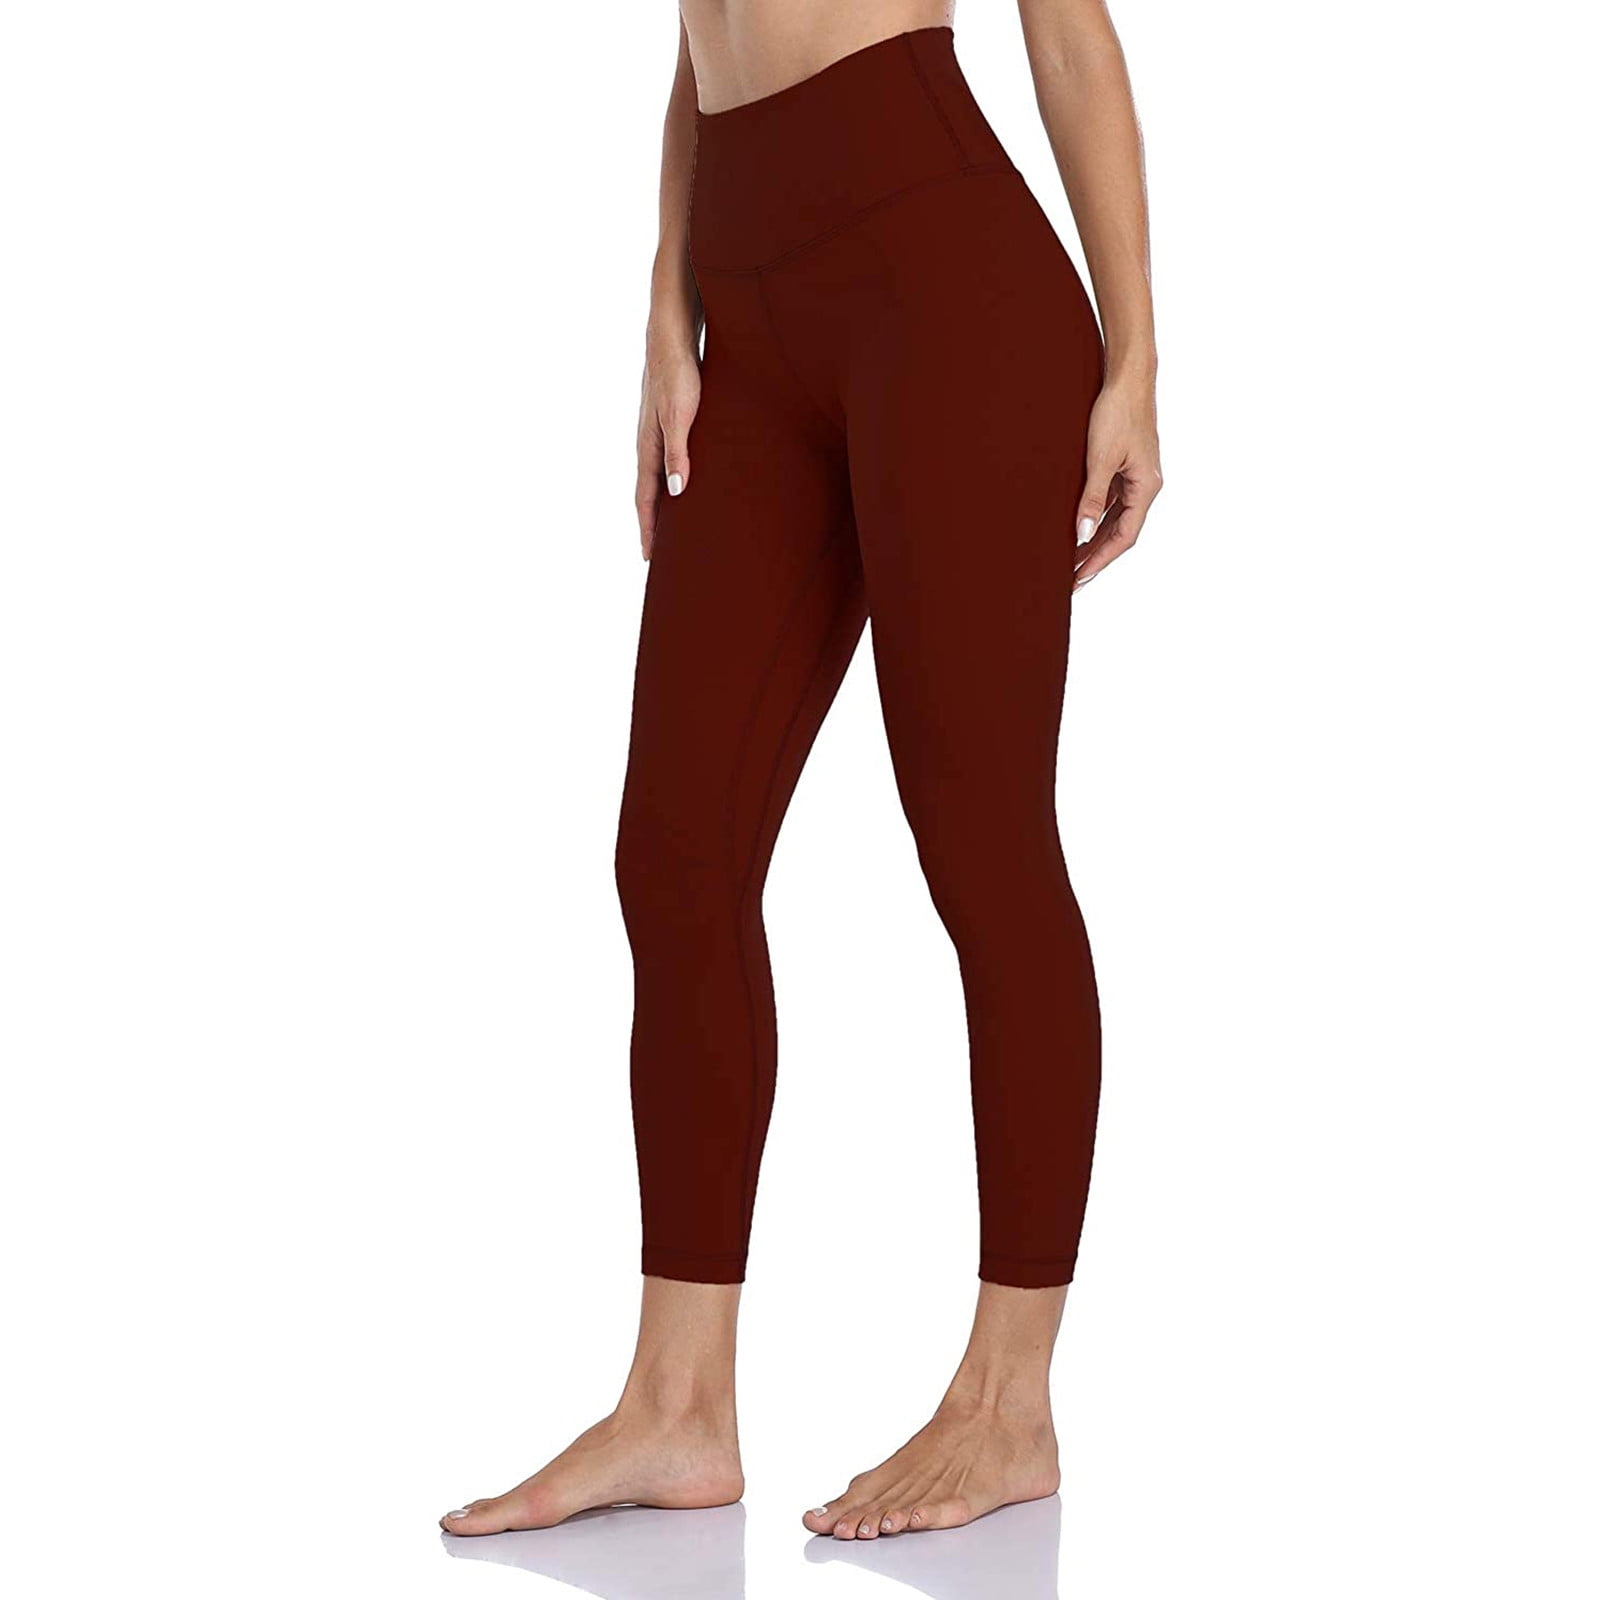 kpoplk Wide Leg Yoga Pants For Women,High Waisted Leggings for Women  Workout Leggings with Inner Pocket Yoga Pants for Women(Red,XL)